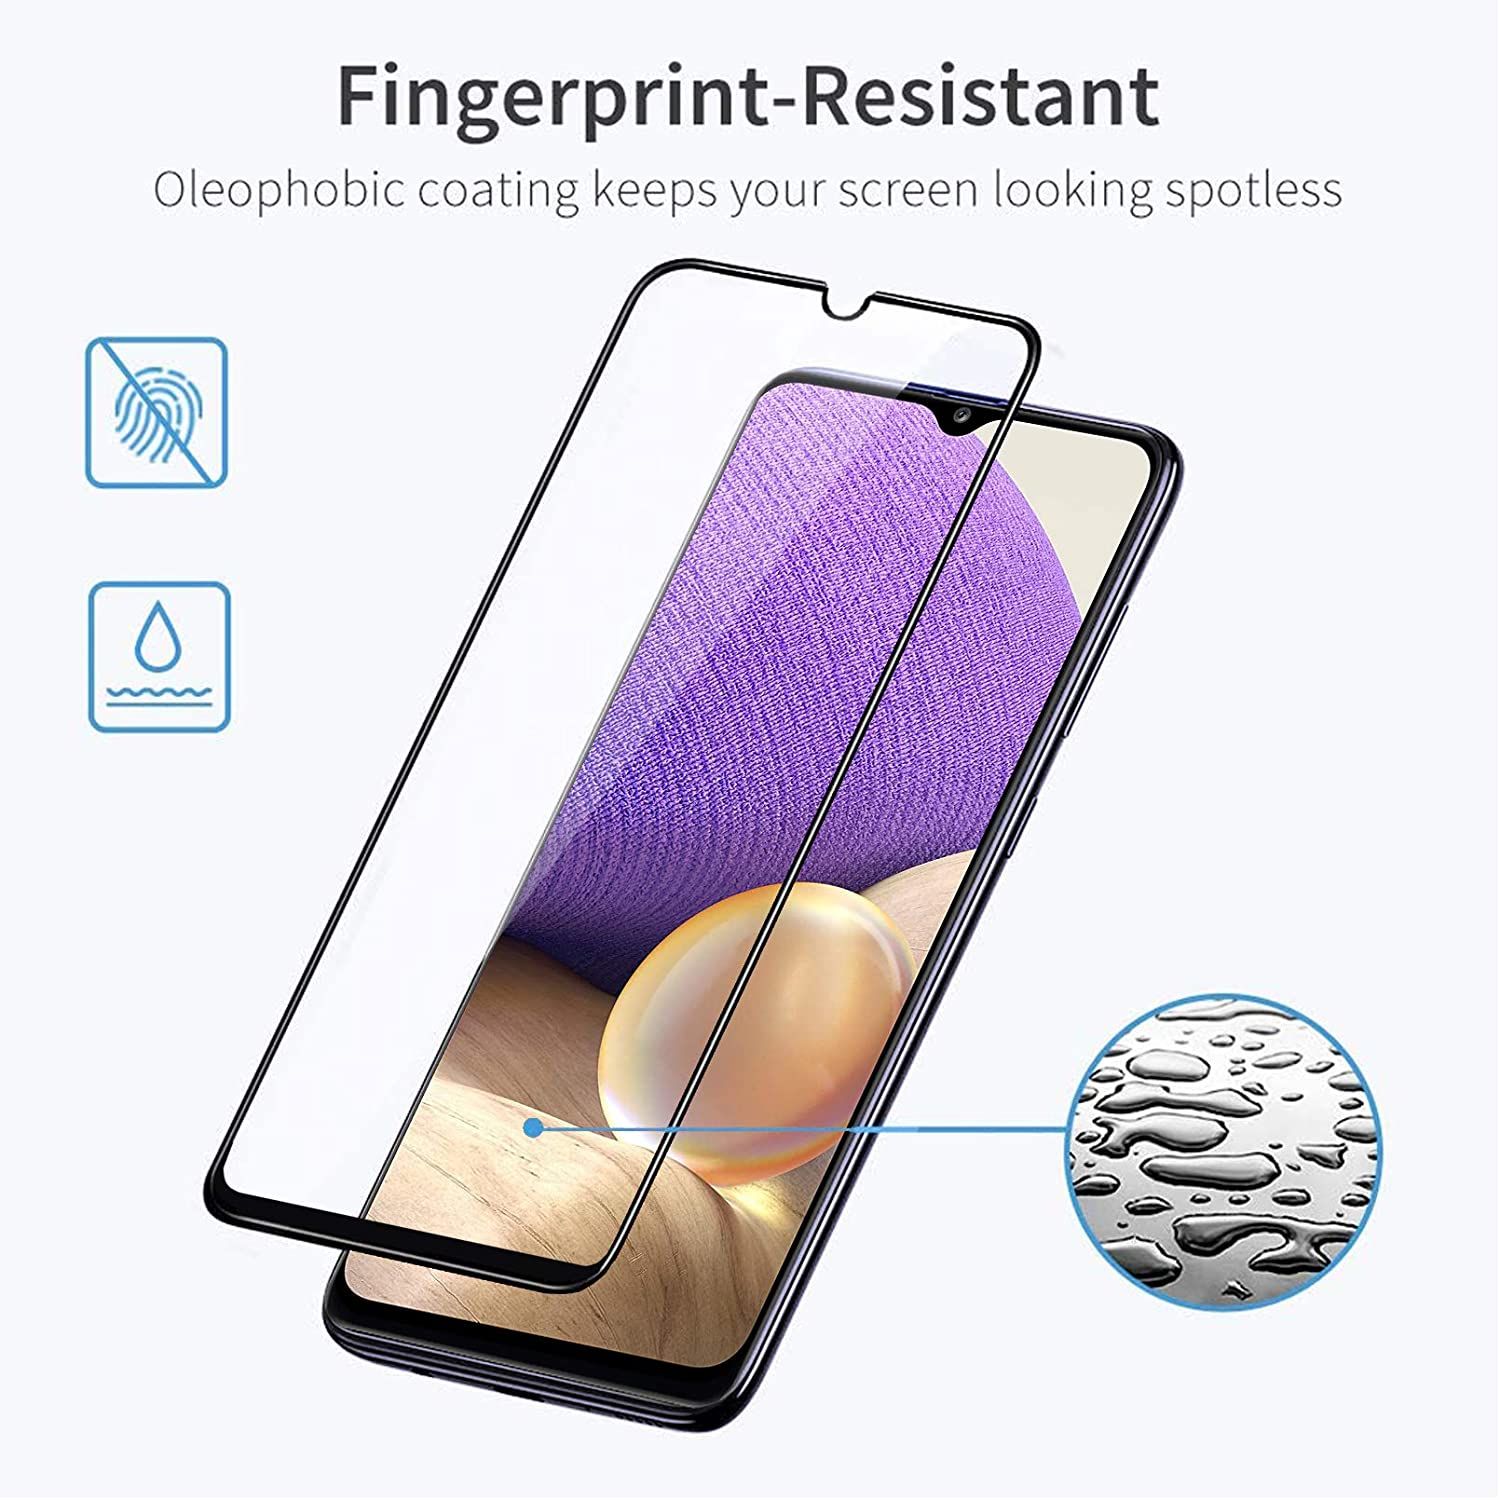 Protège écran en verre trempé 9H pour Galaxy A32 5G